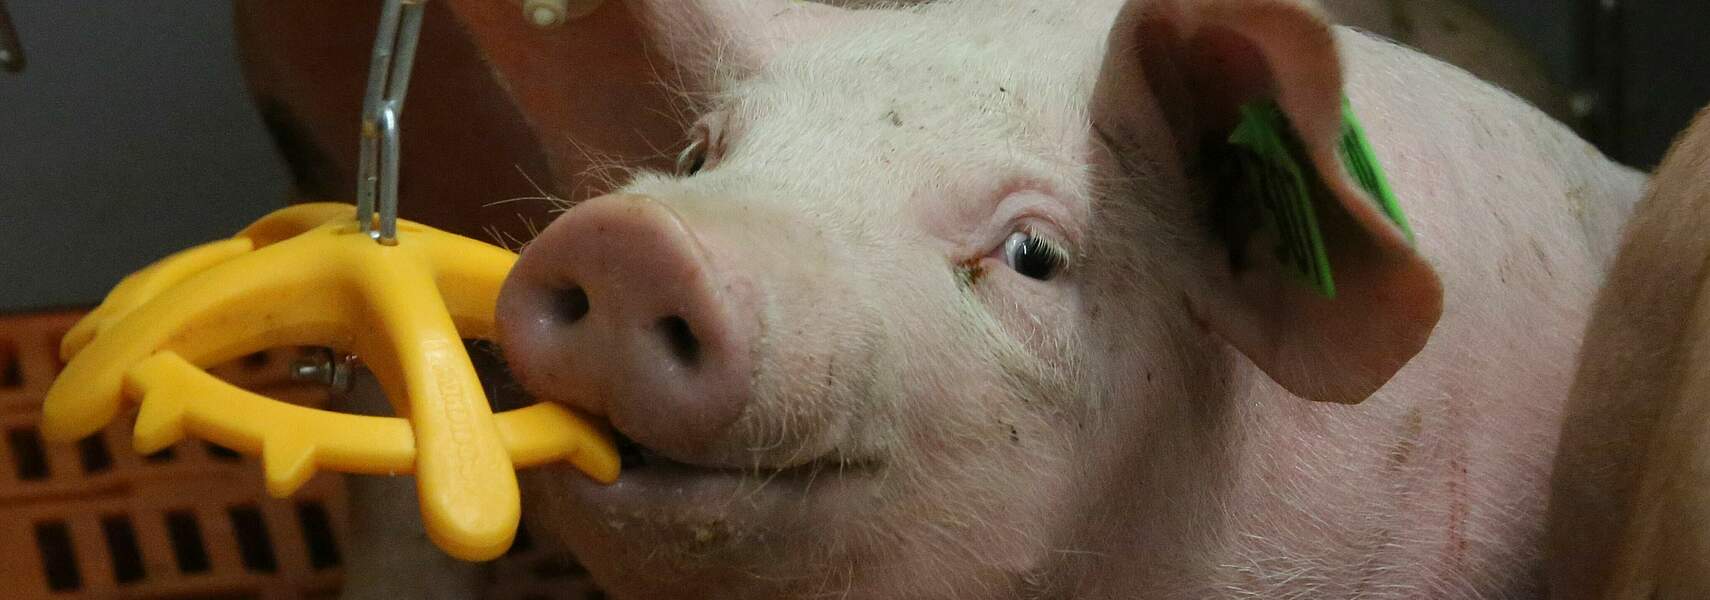 Deutsche Schweinehaltung im Krisenmodus